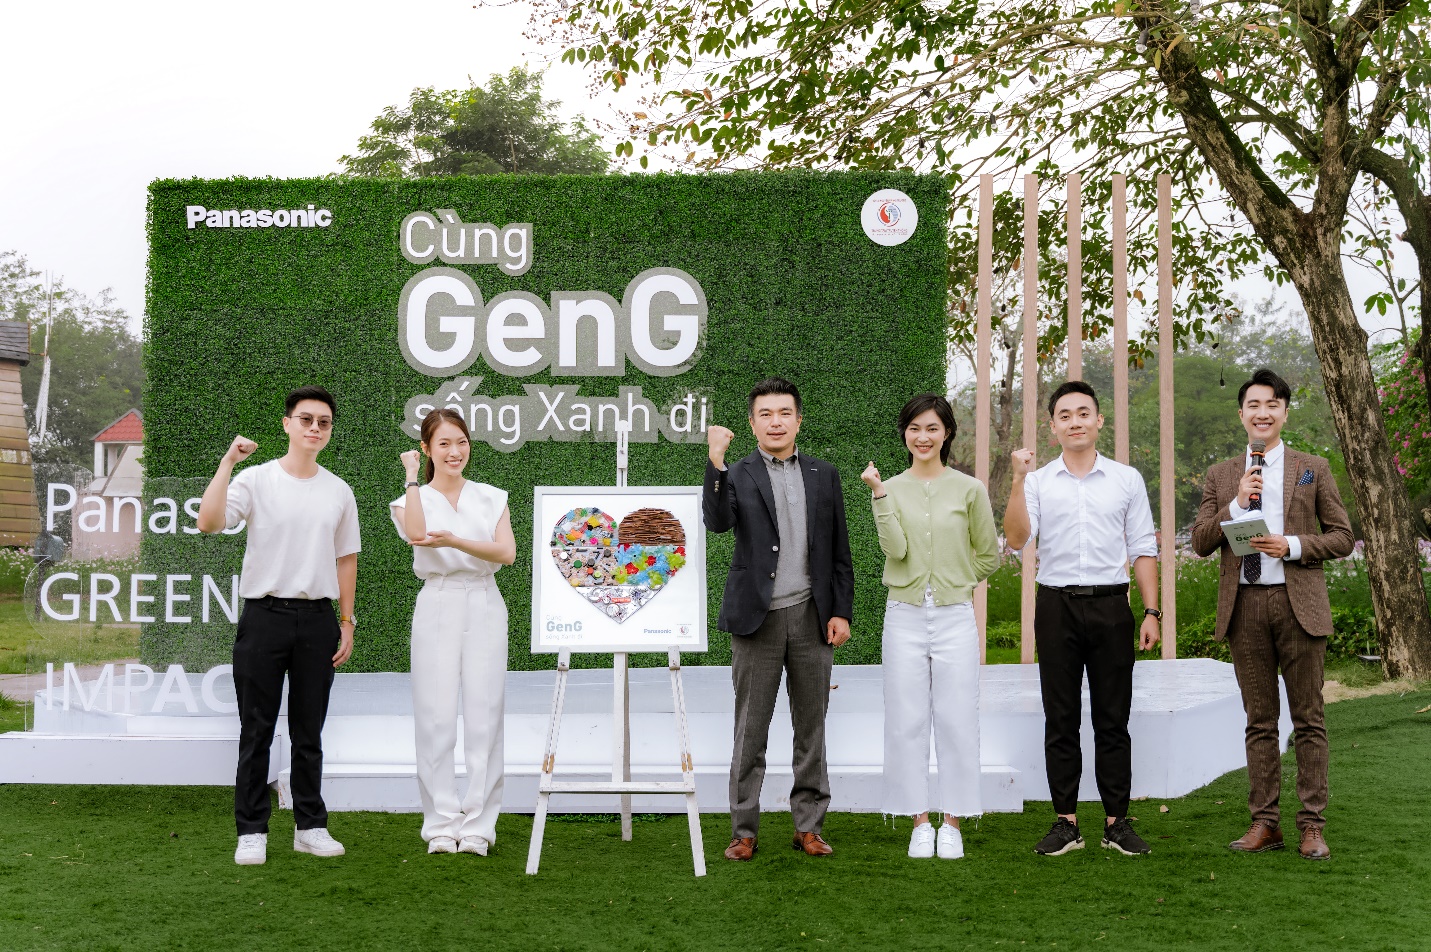 Chương trình “Đại sứ Gen G” đang tìm kiếm những sáng kiến bền vững - Ảnh 1.